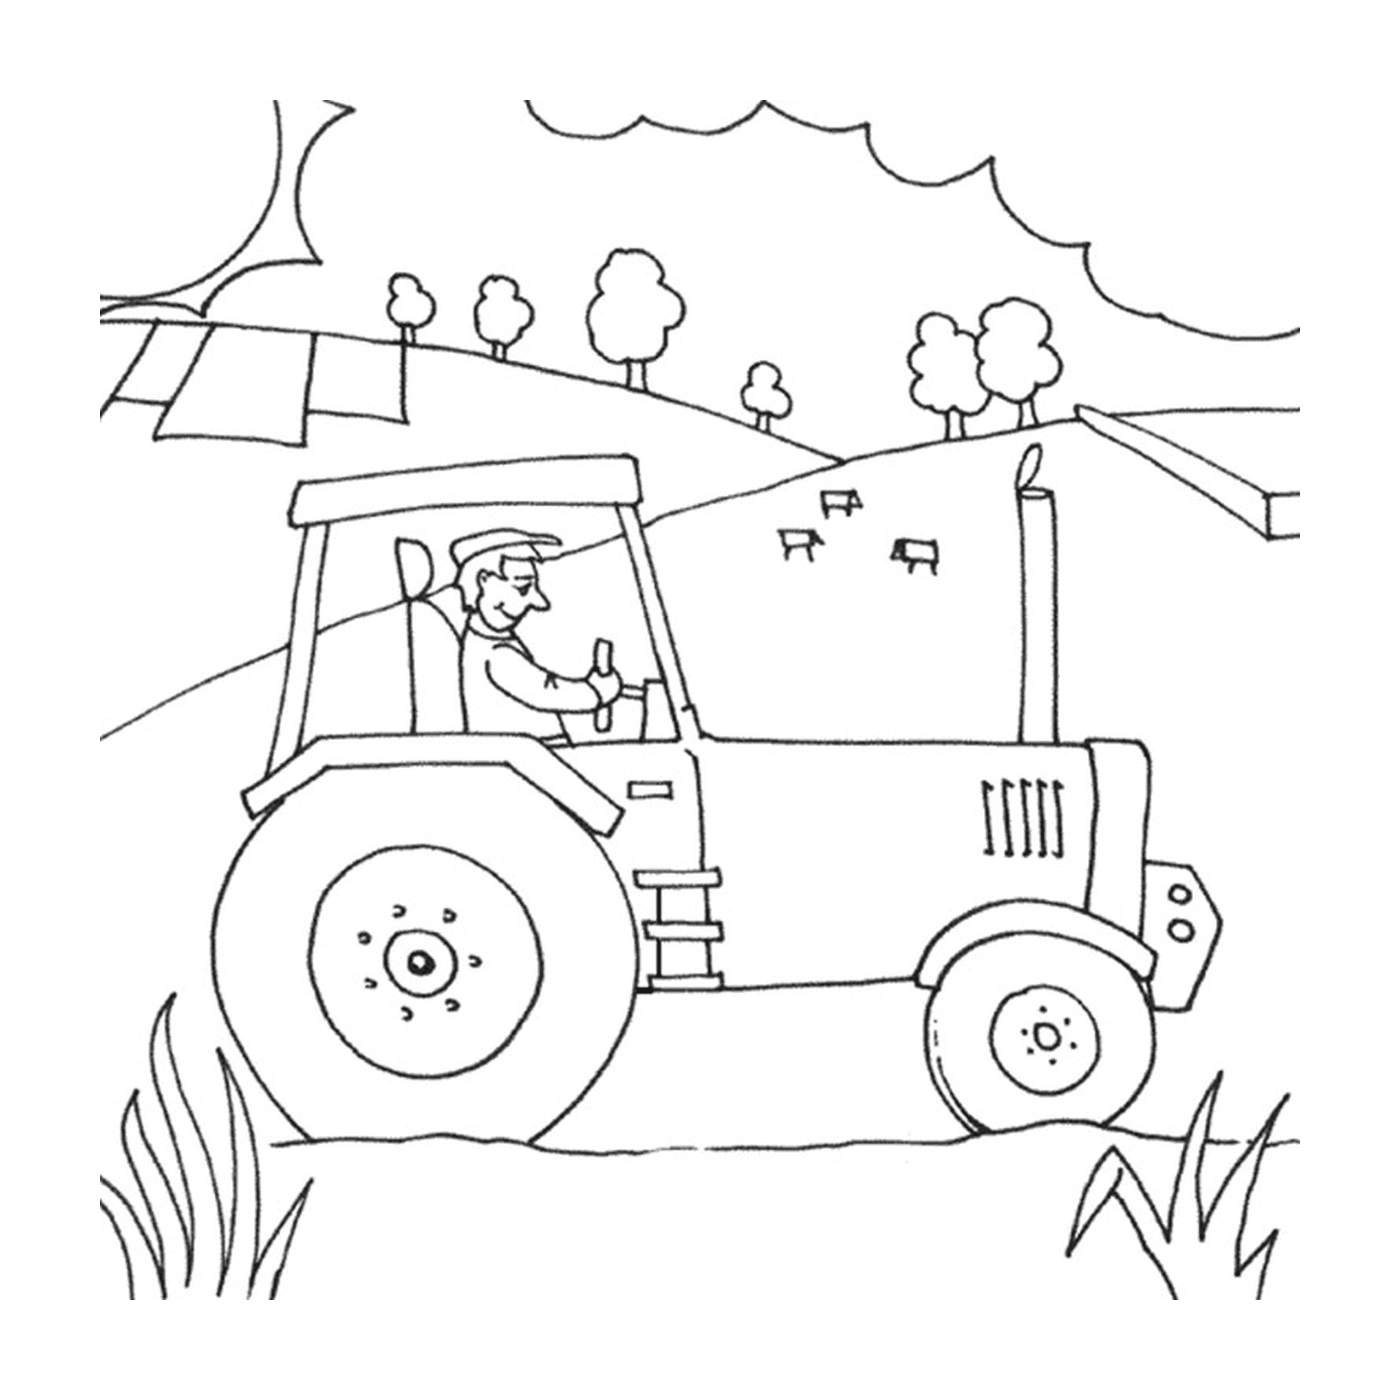  Azienda agricola con trattore, vita attiva rurale 